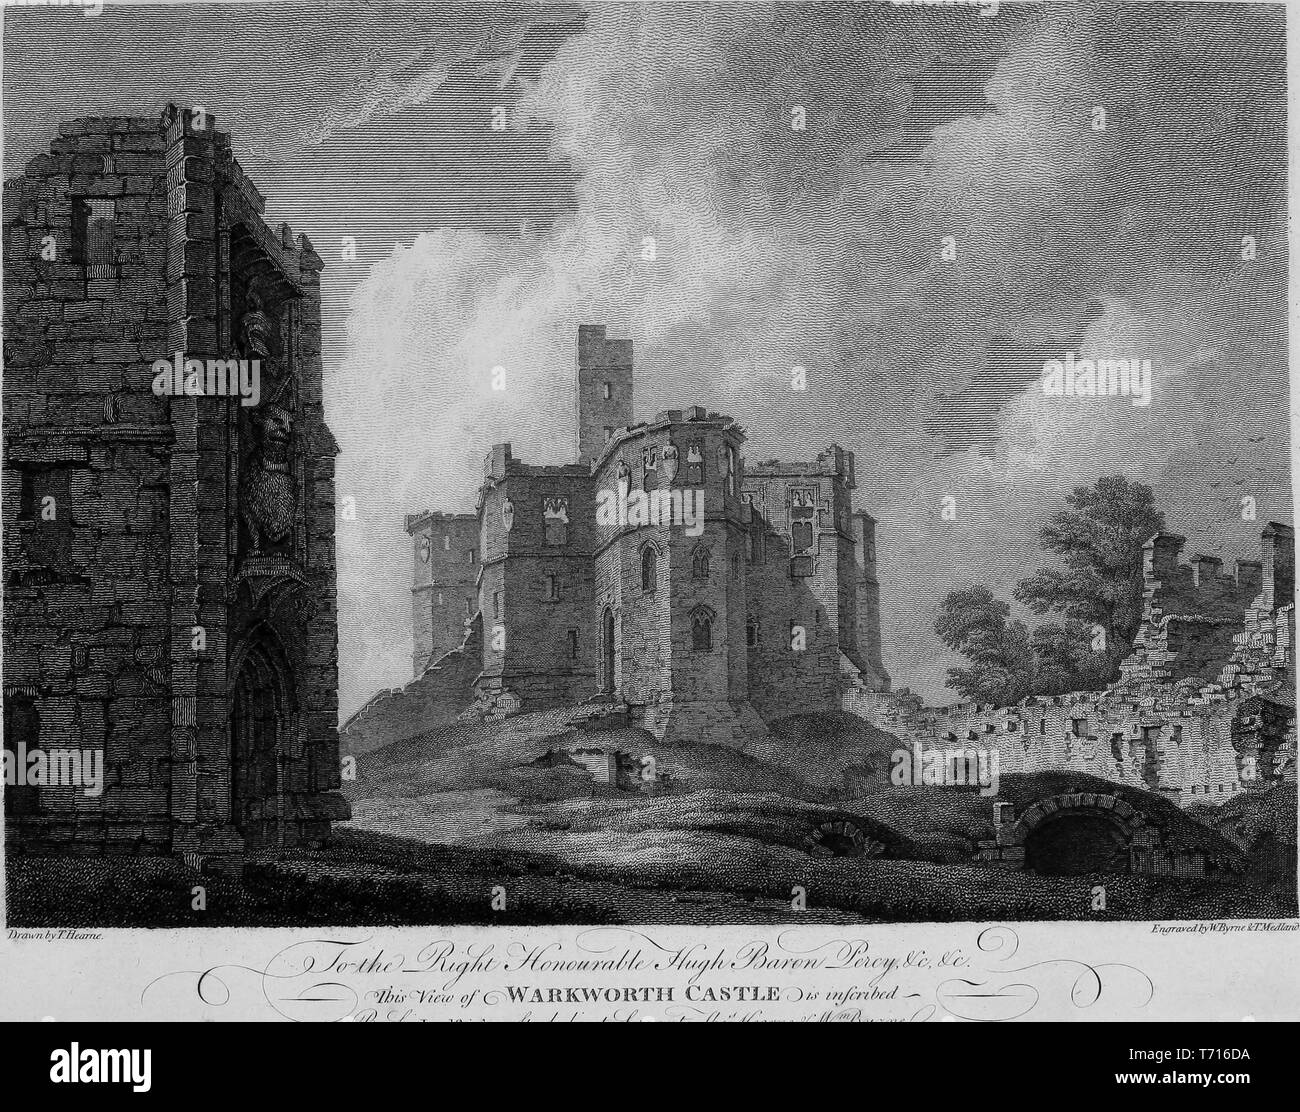 Incisione del castello di Warkworth in Northumberland, Inghilterra, dal libro "Antichità di Gran Bretagna' da William Byrne e Thomas Hearne, 1825. La cortesia Internet Archive. () Foto Stock